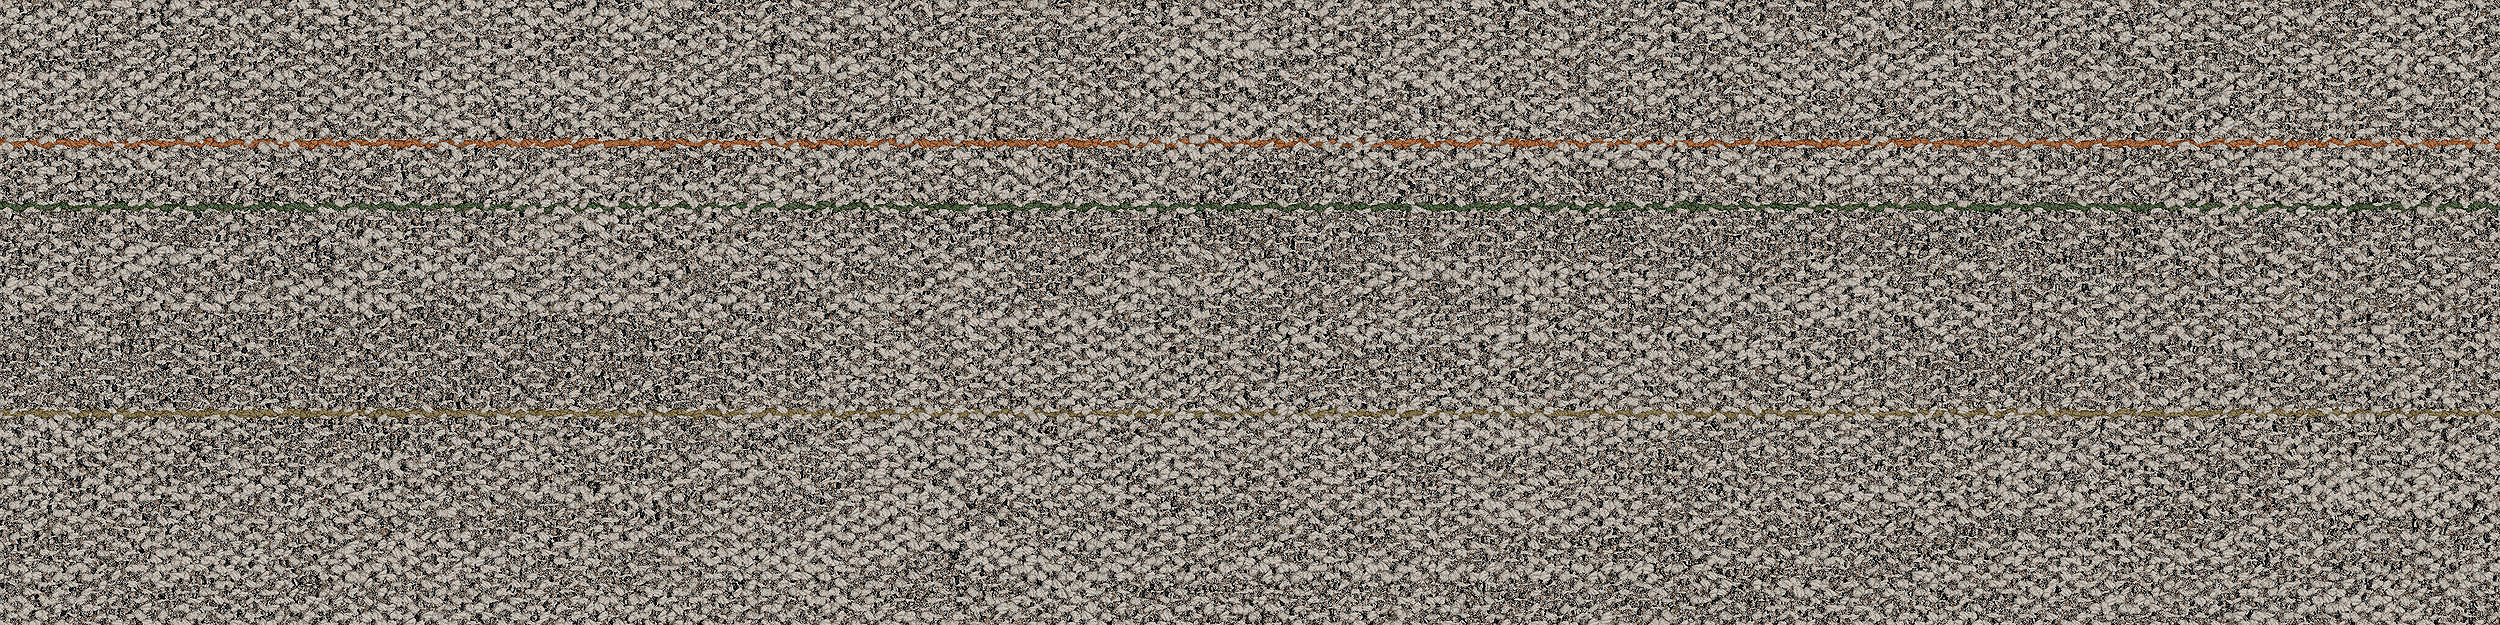 Open Air 402 Stria Carpet Tile In Oat numéro d’image 5